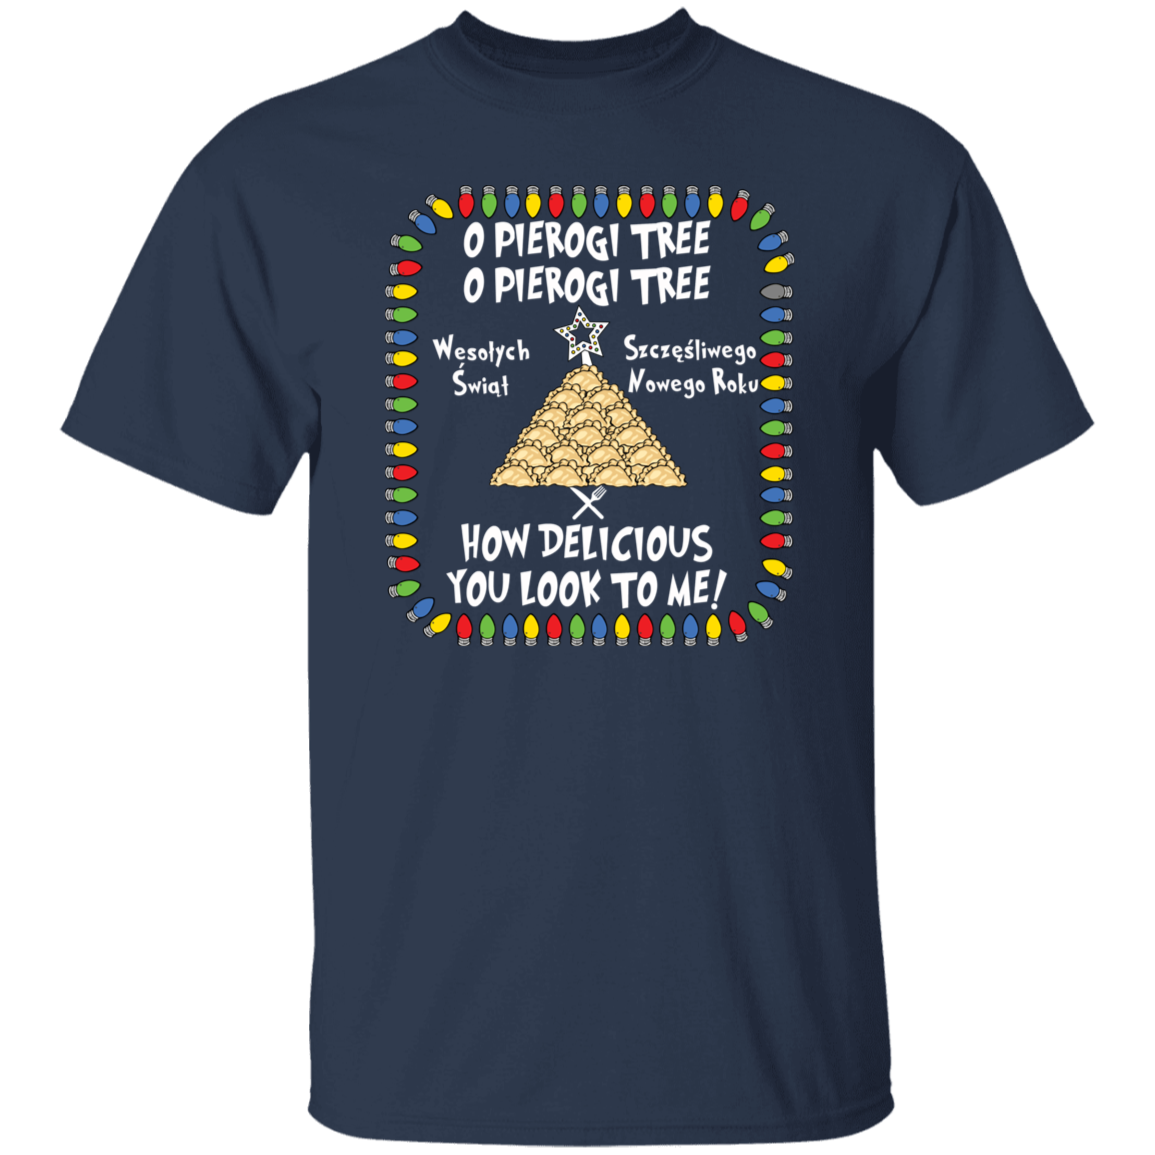 Pierogi Tree Shirt - How Delicious You Look To Me T-Shirts CustomCat Navy S 